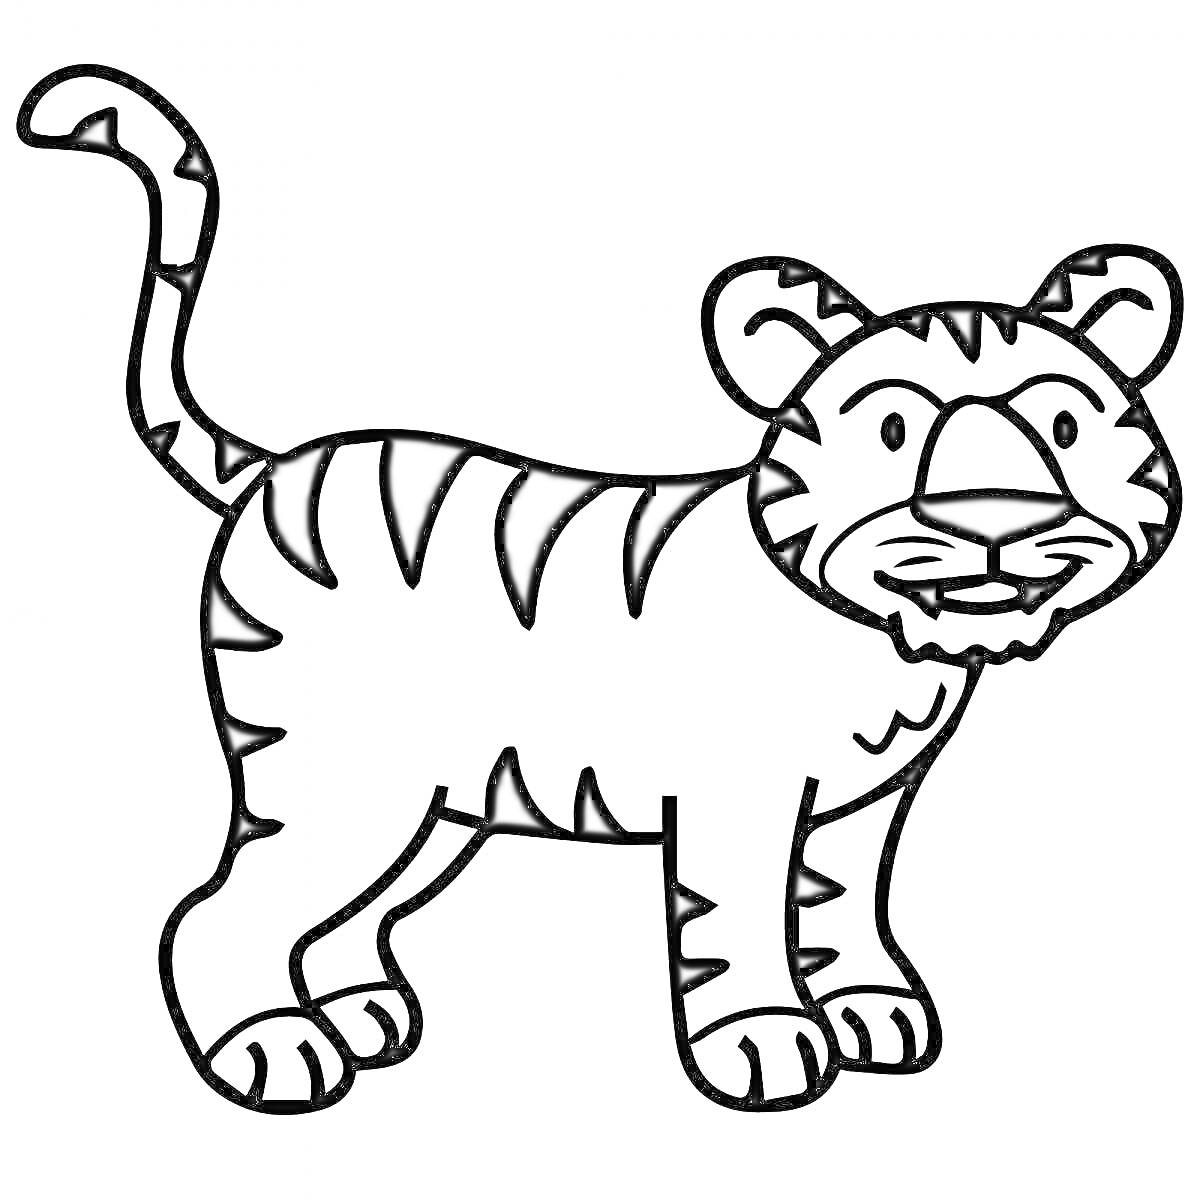 Раскраска Тигр без полосок, с полосами на хвосте, ногах, спине и морде